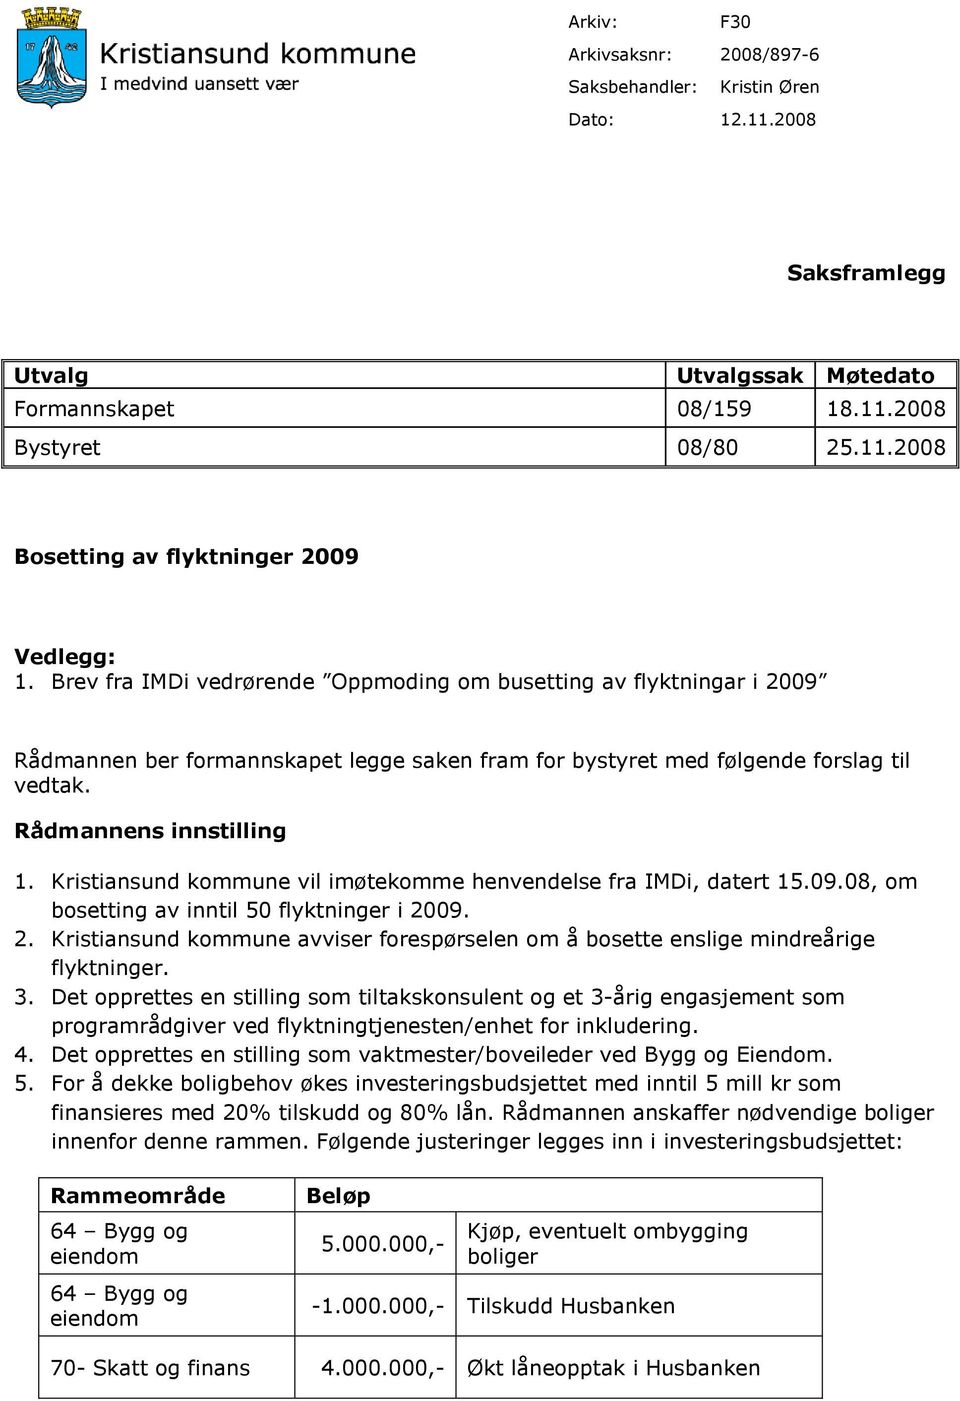 Kristiansund kommune vil imøtekomme henvendelse fra IMDi, datert 15.09.08, om bosetting av inntil 50 flyktninger i 20